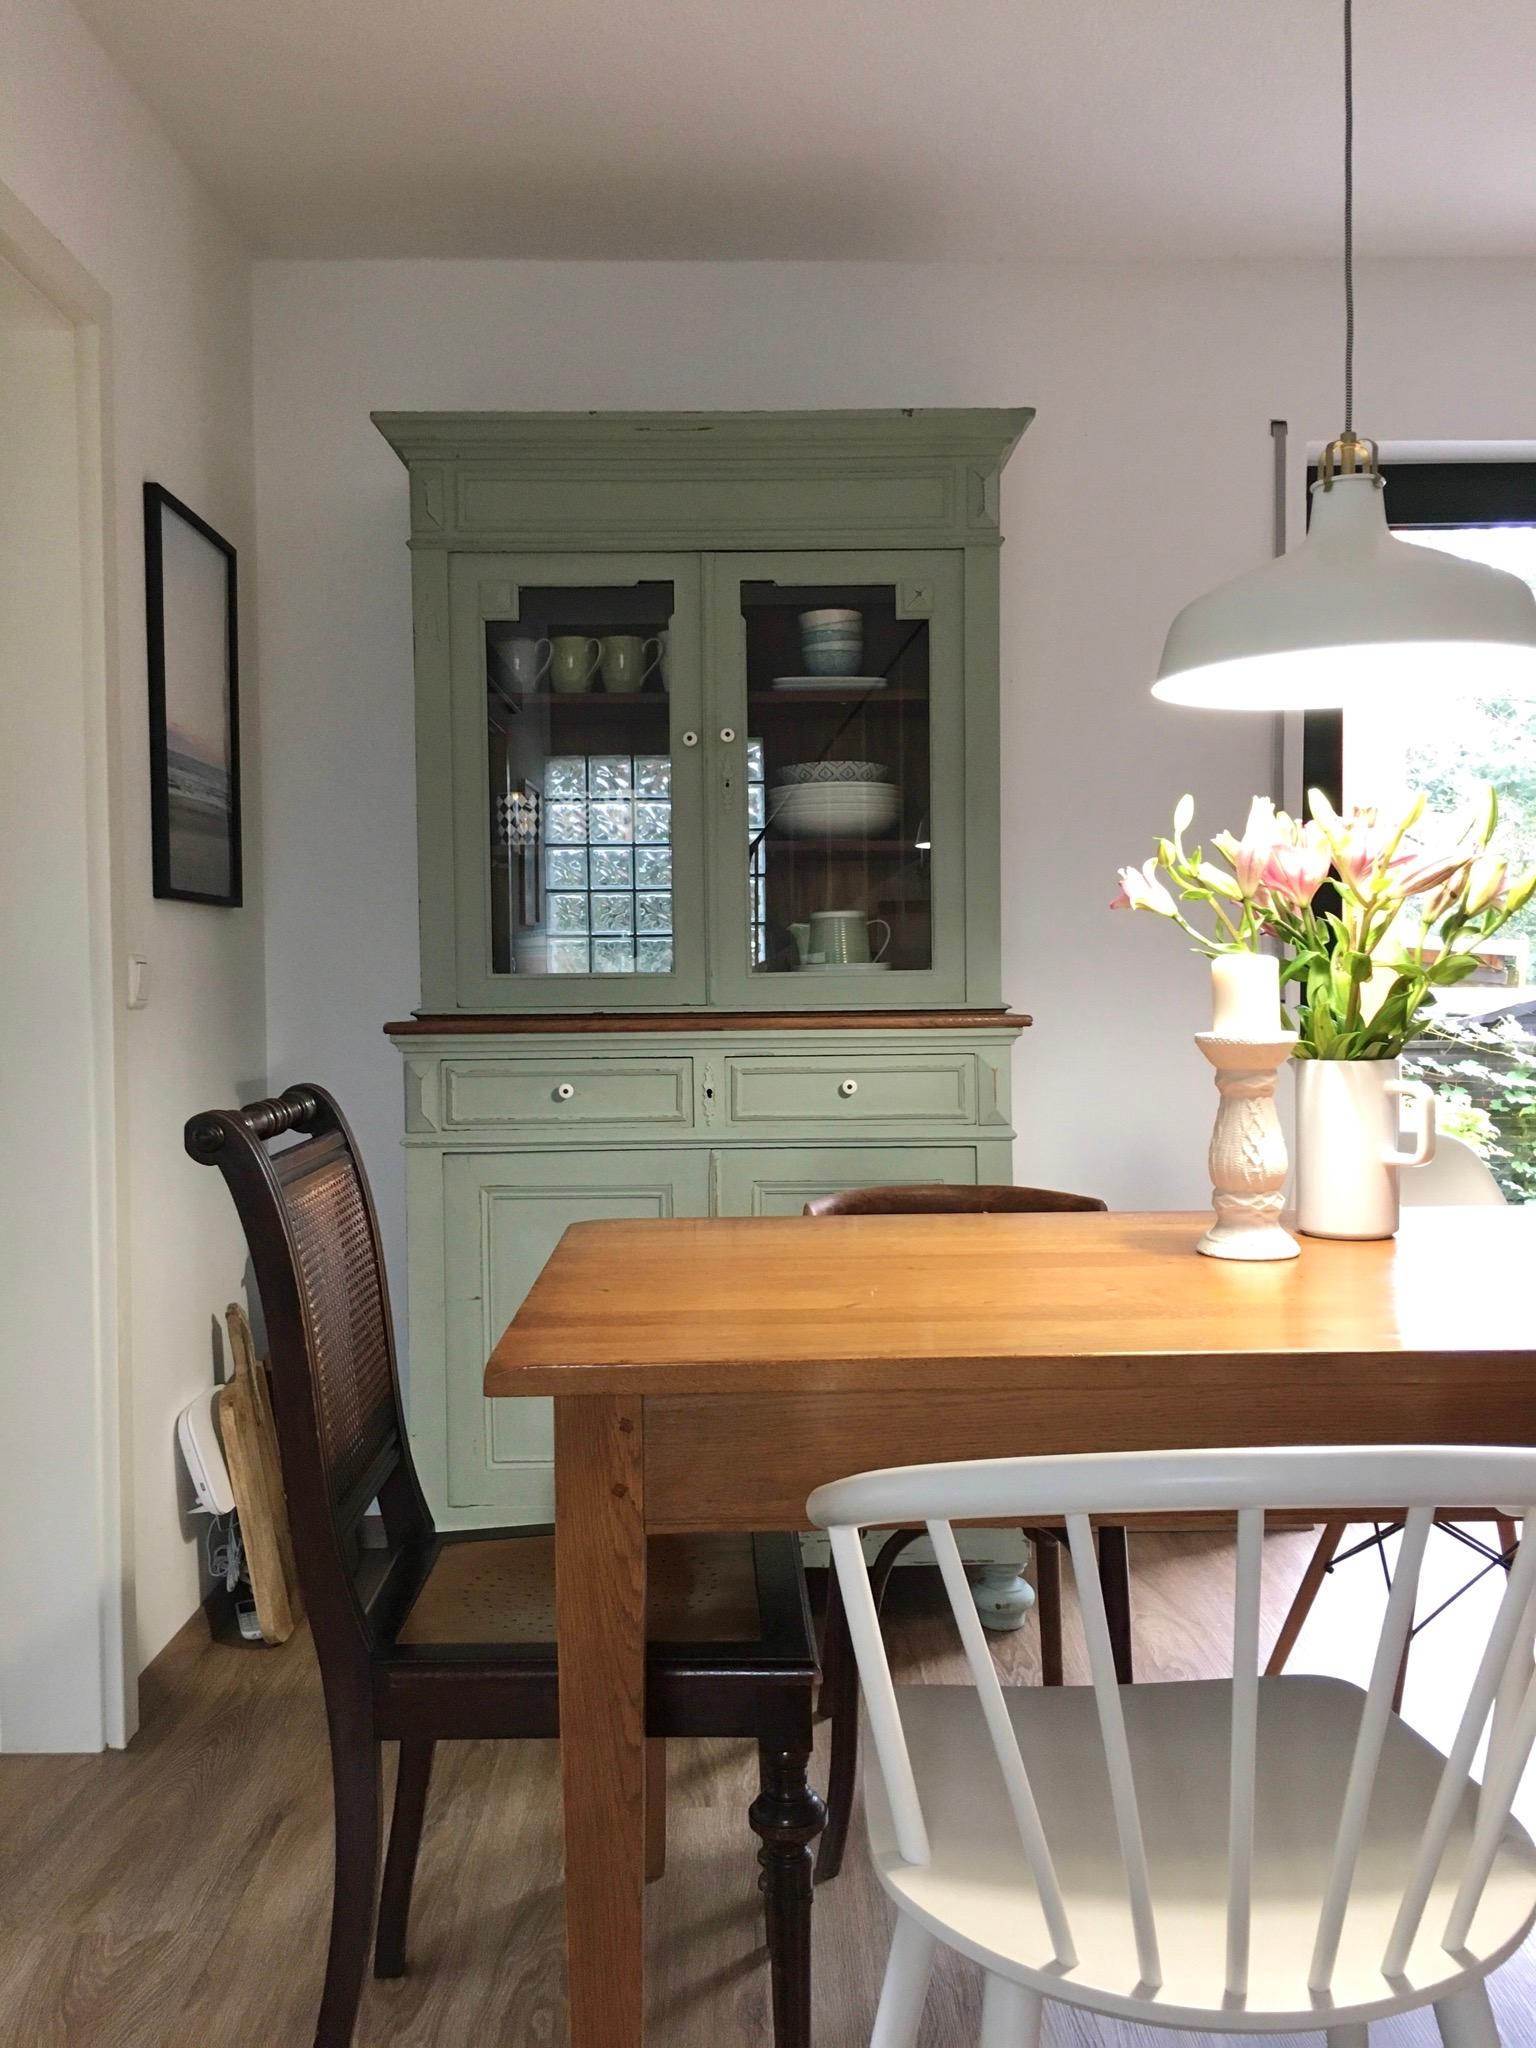 Ich sammle mit wahrer Leidenschaft Möbel #wohnliebe #küchenbuffet #vintagemöbel #interieur 